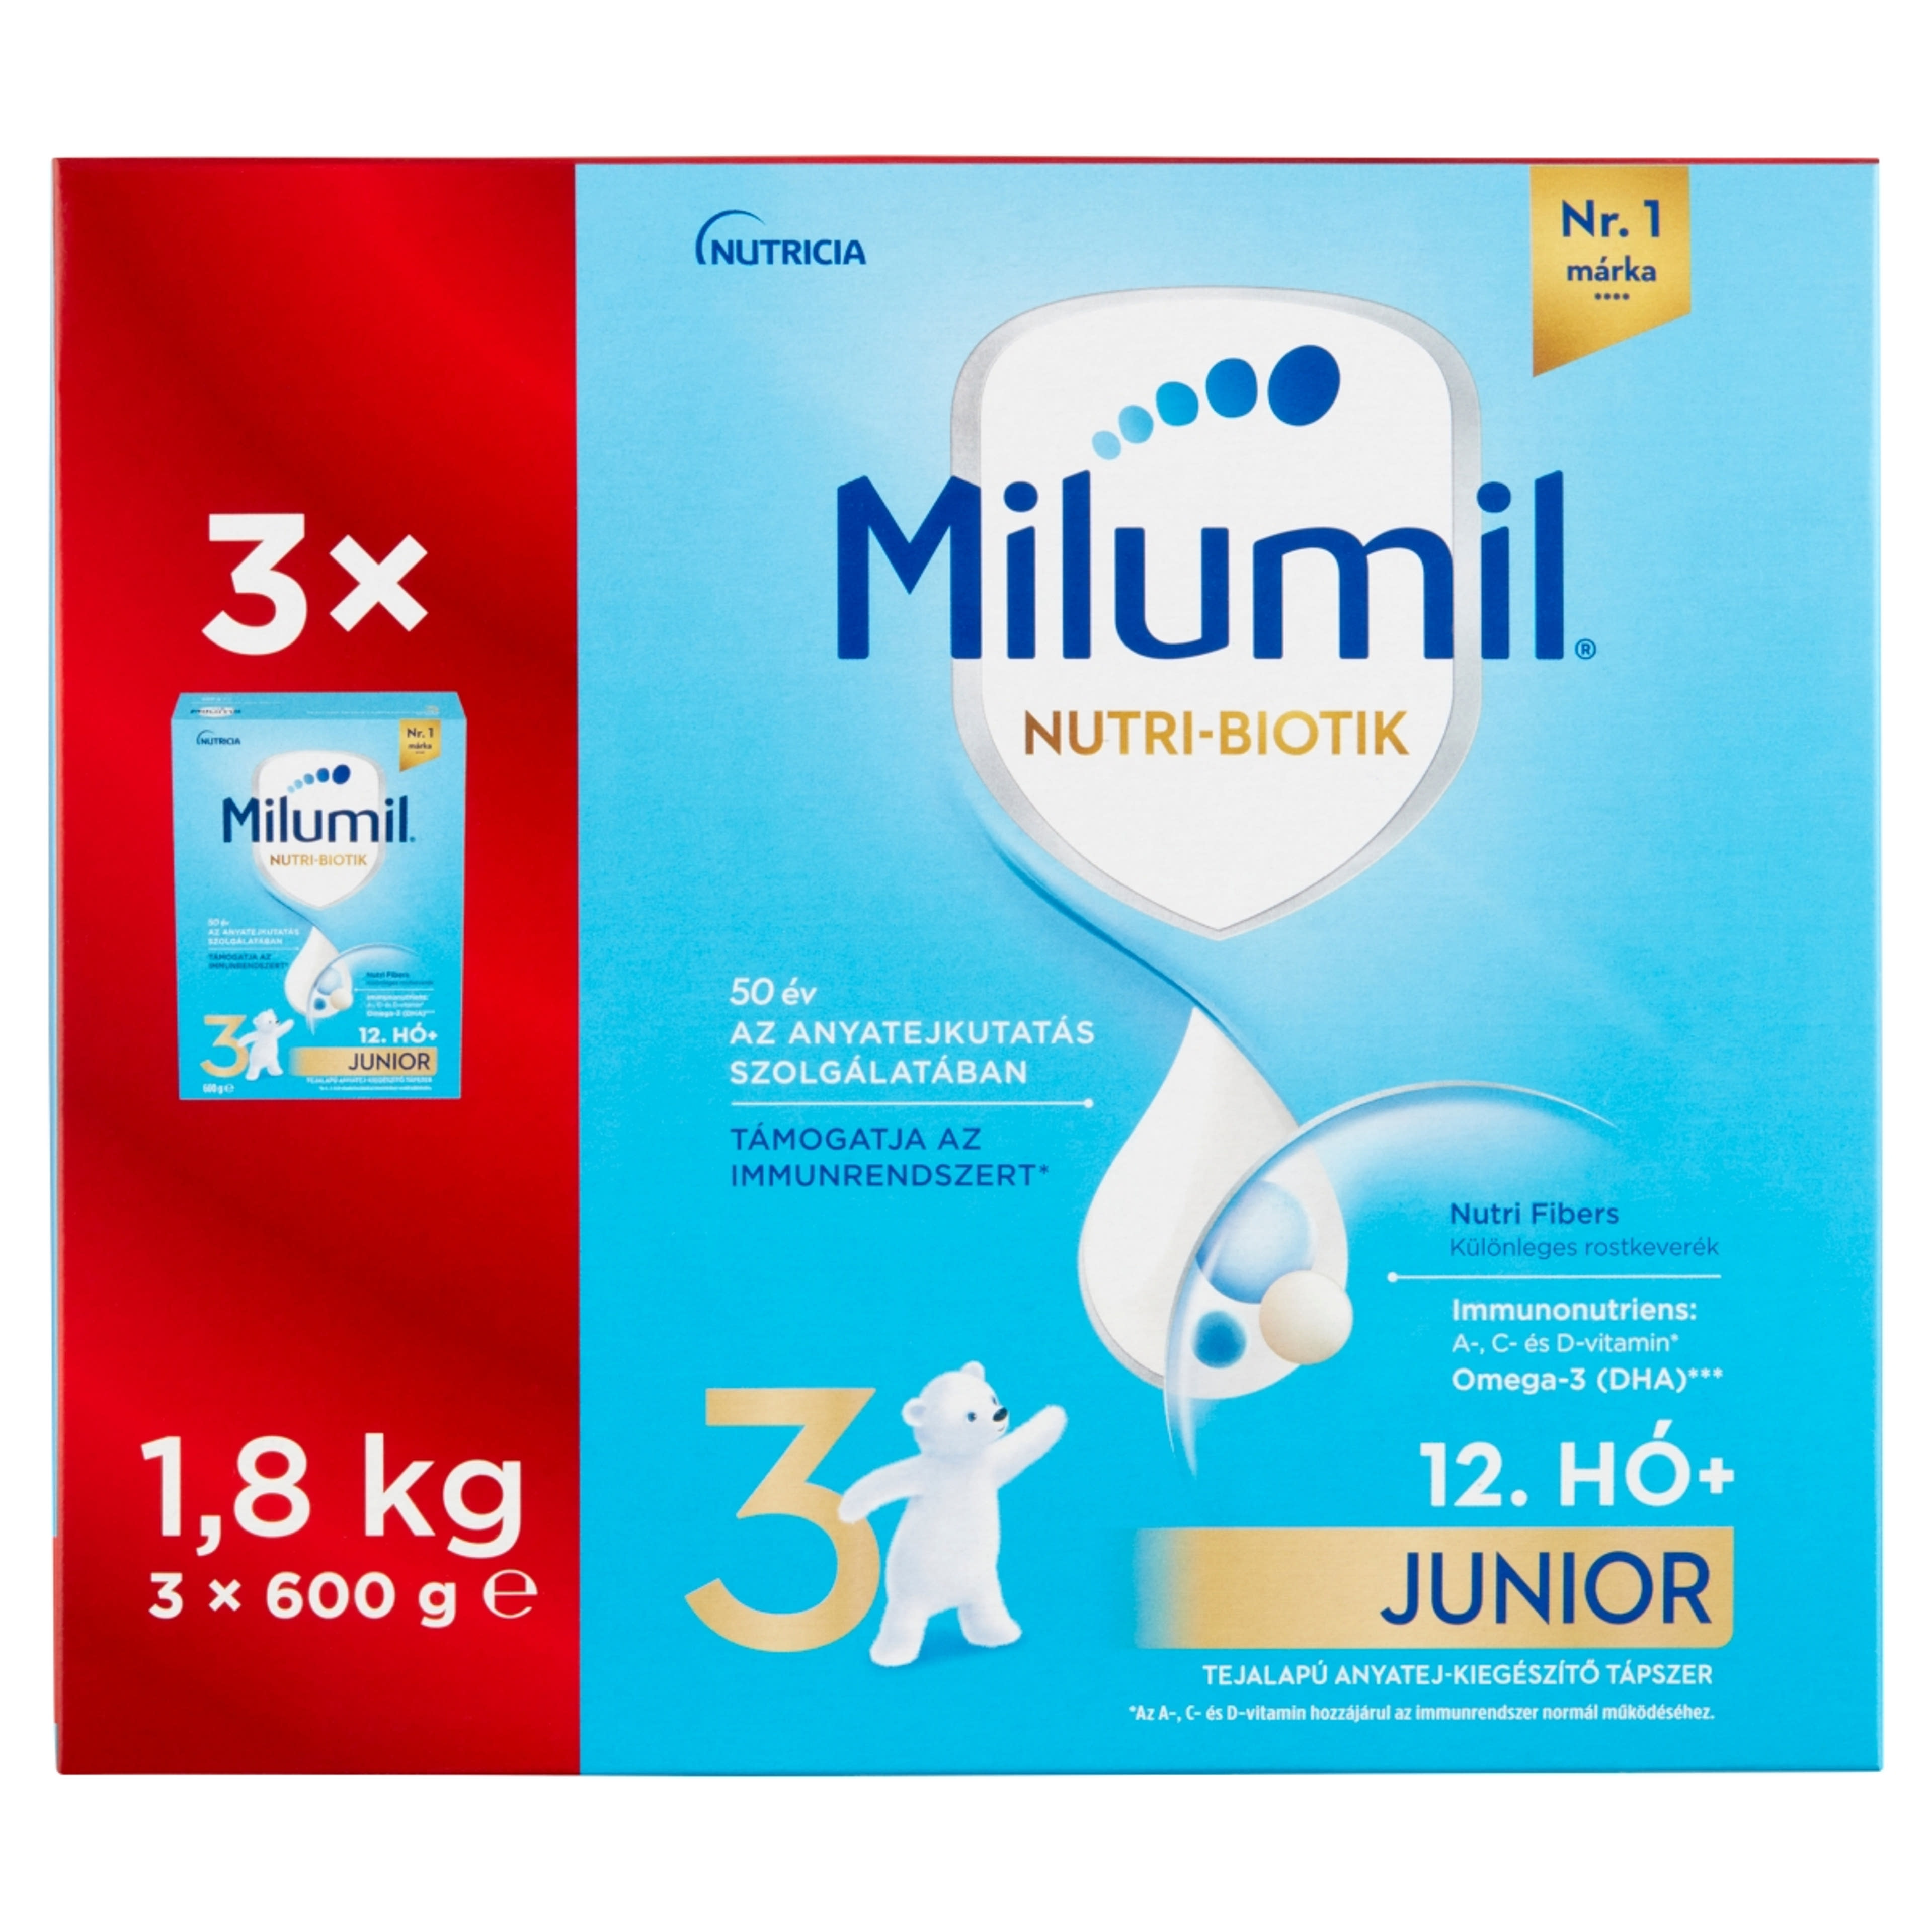 Milumil Nutri-Biotik 3 Junior tejalapú anyatej-kiegészítő tápszer 12 hónapos kortól - 1800 g